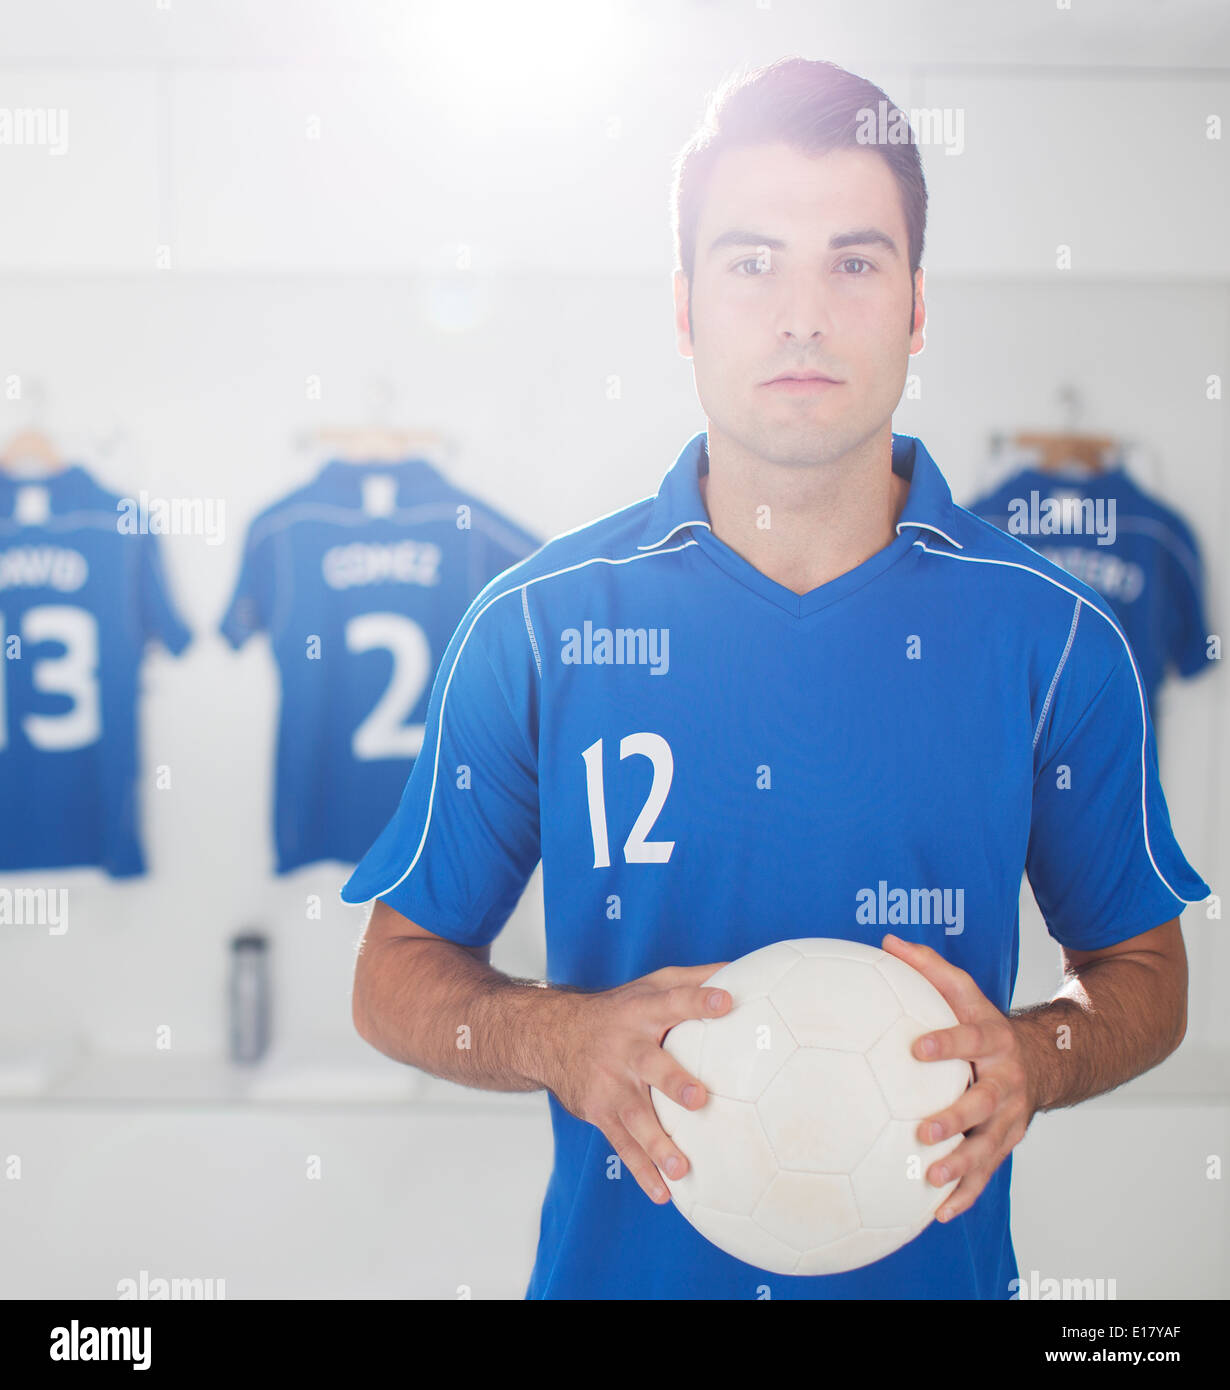 Soccer player holding ball in locker room Stock Photo